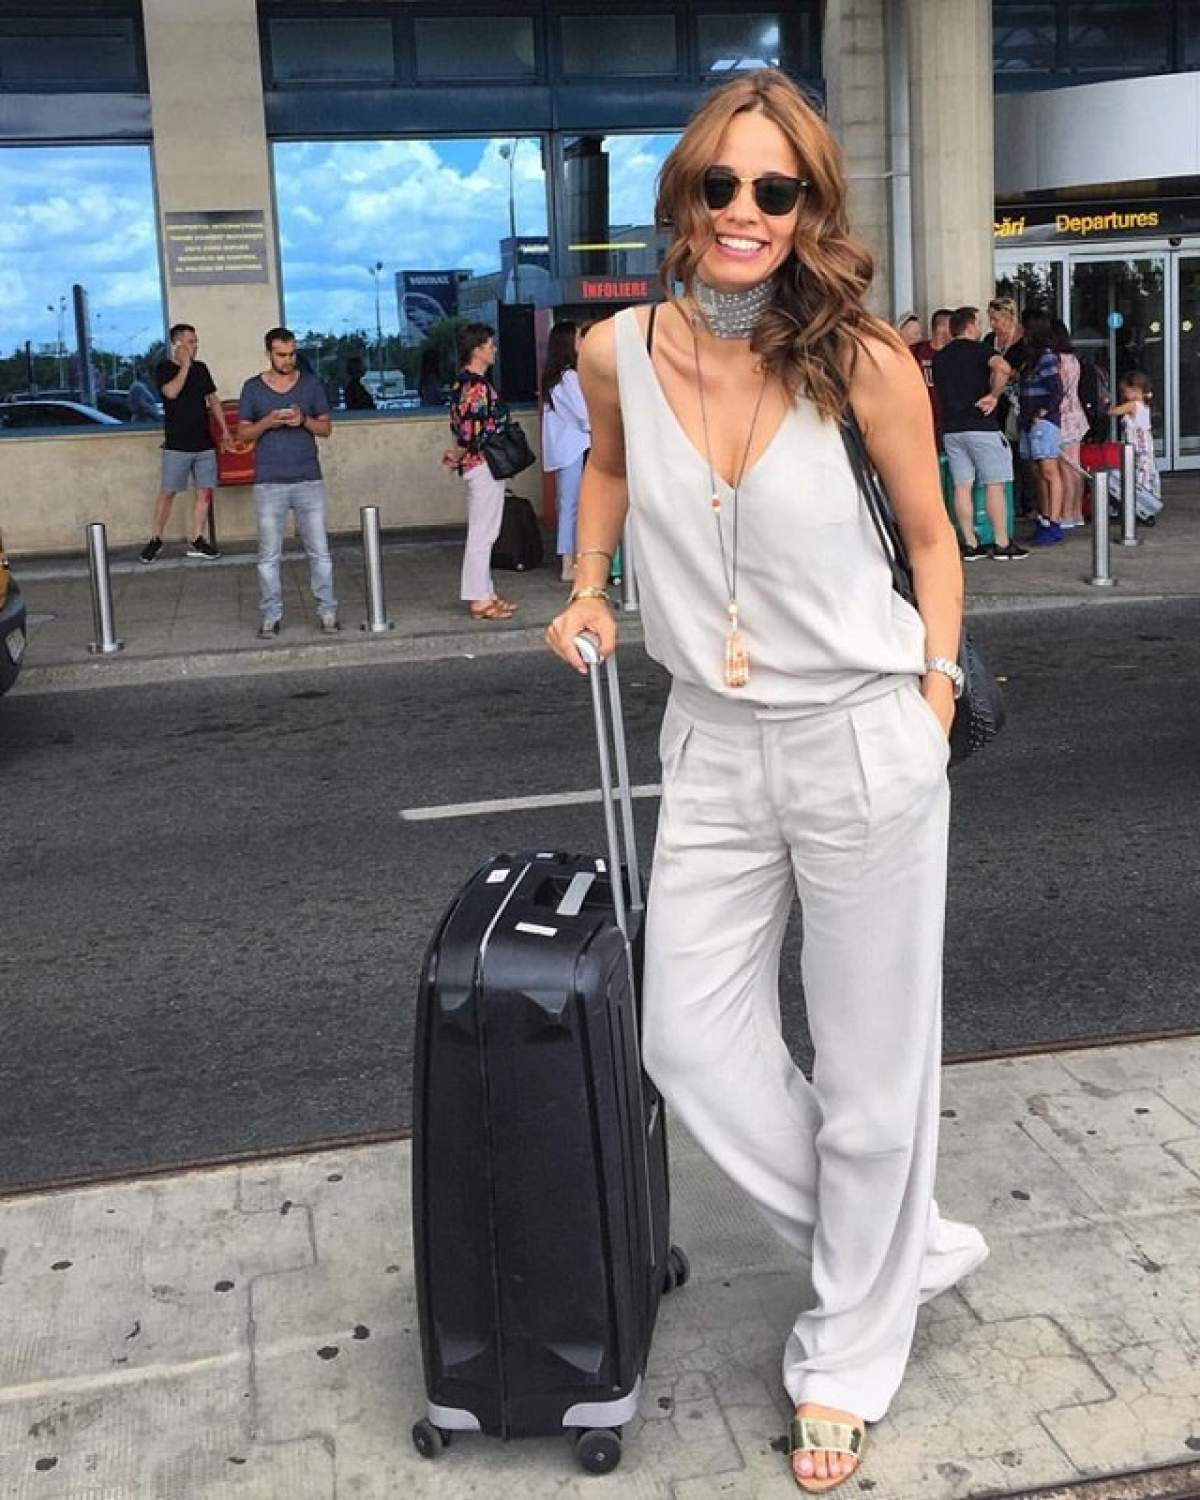 VIDEO / Andreea Raicu, urmărită în aeroport! Se întâmplă încontinuu de cinci zile